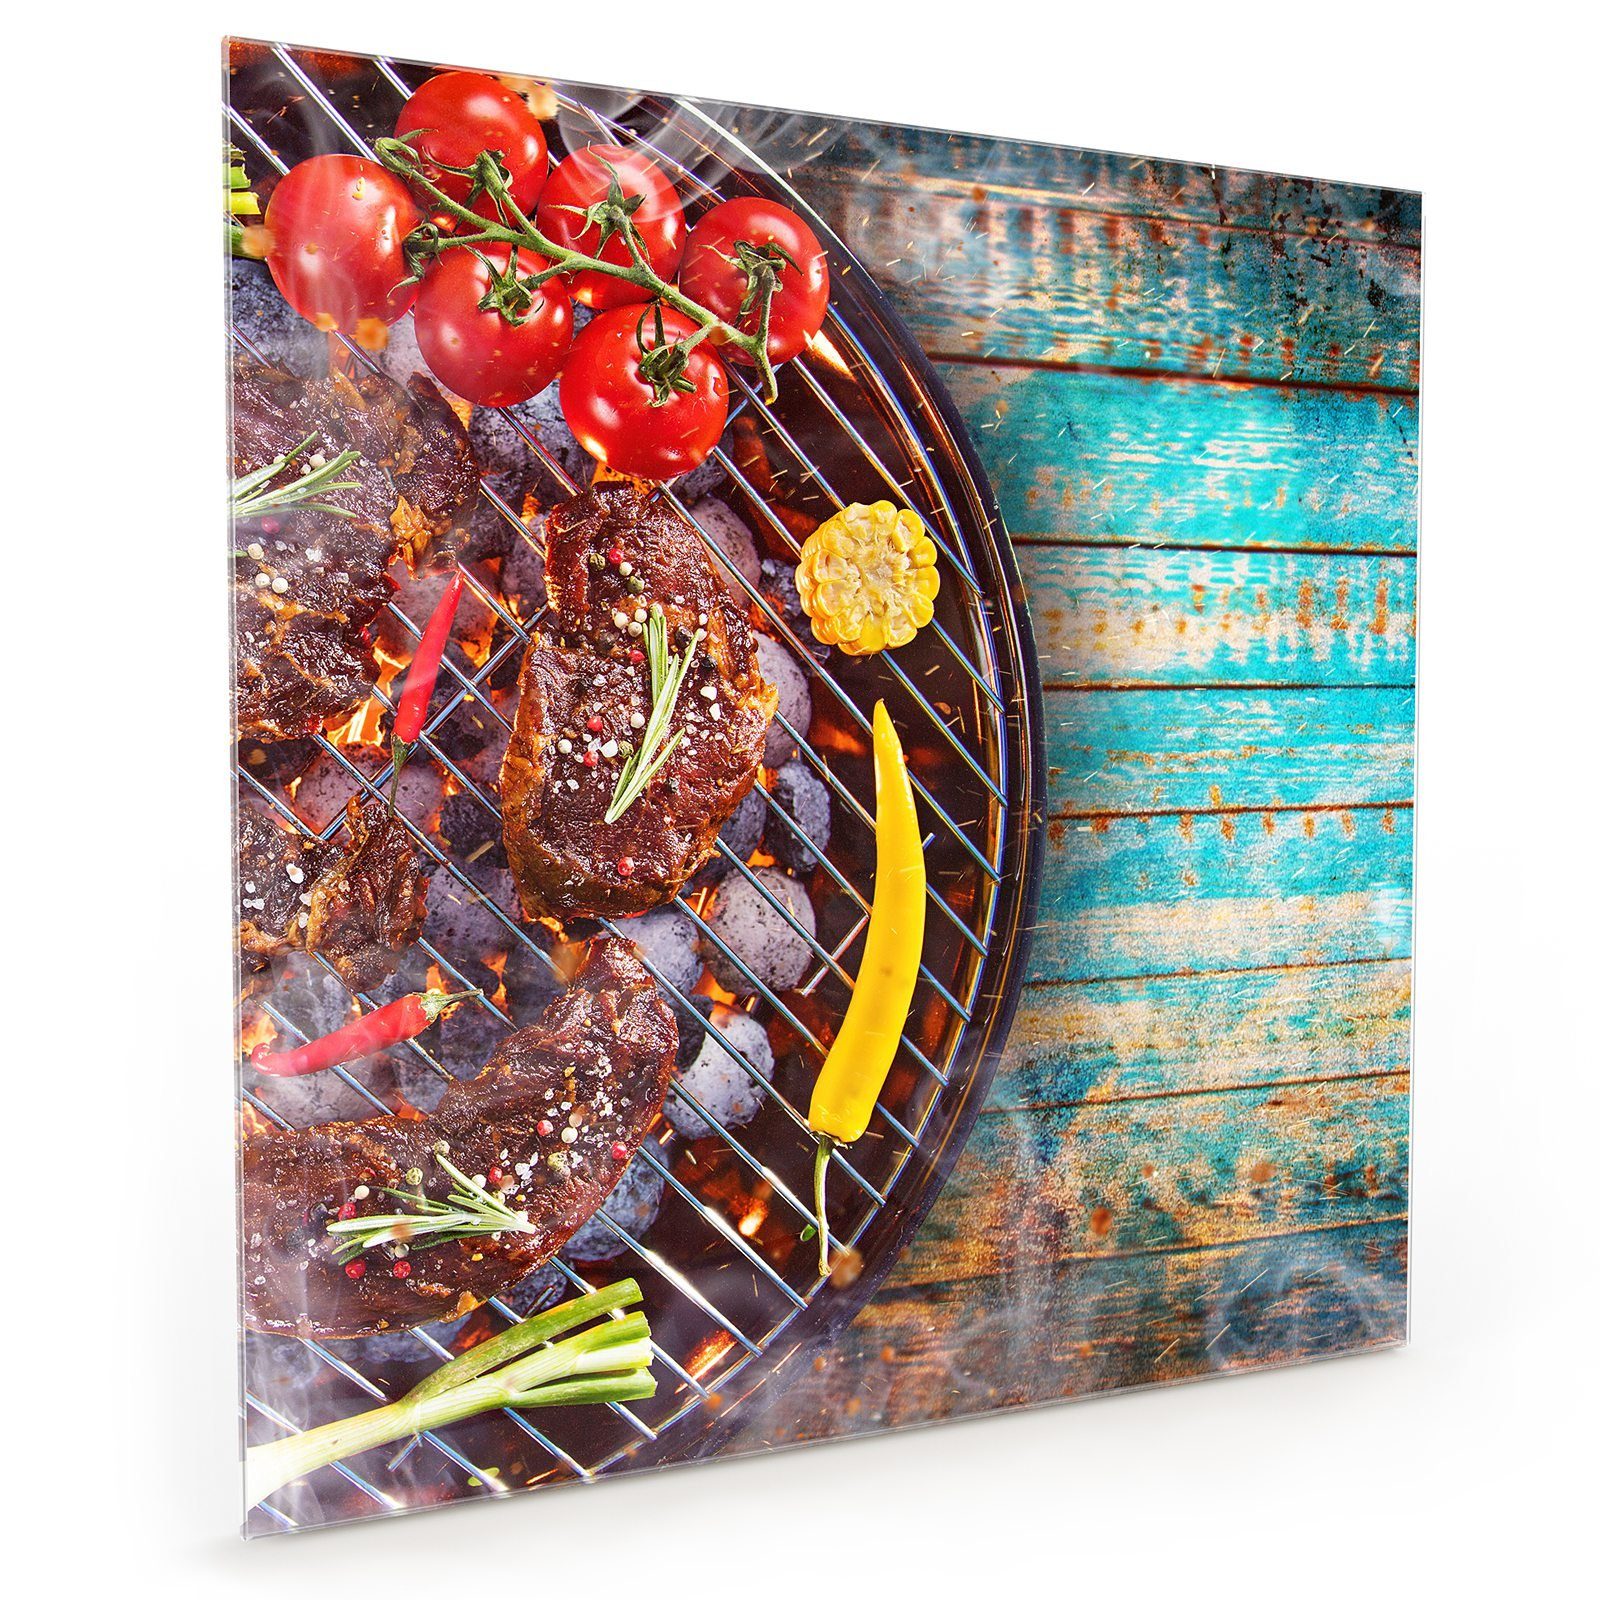 Küchenrückwand Spritzschutz Primedeco Motiv Glas mit Fleisch Küchenrückwand auf Grill